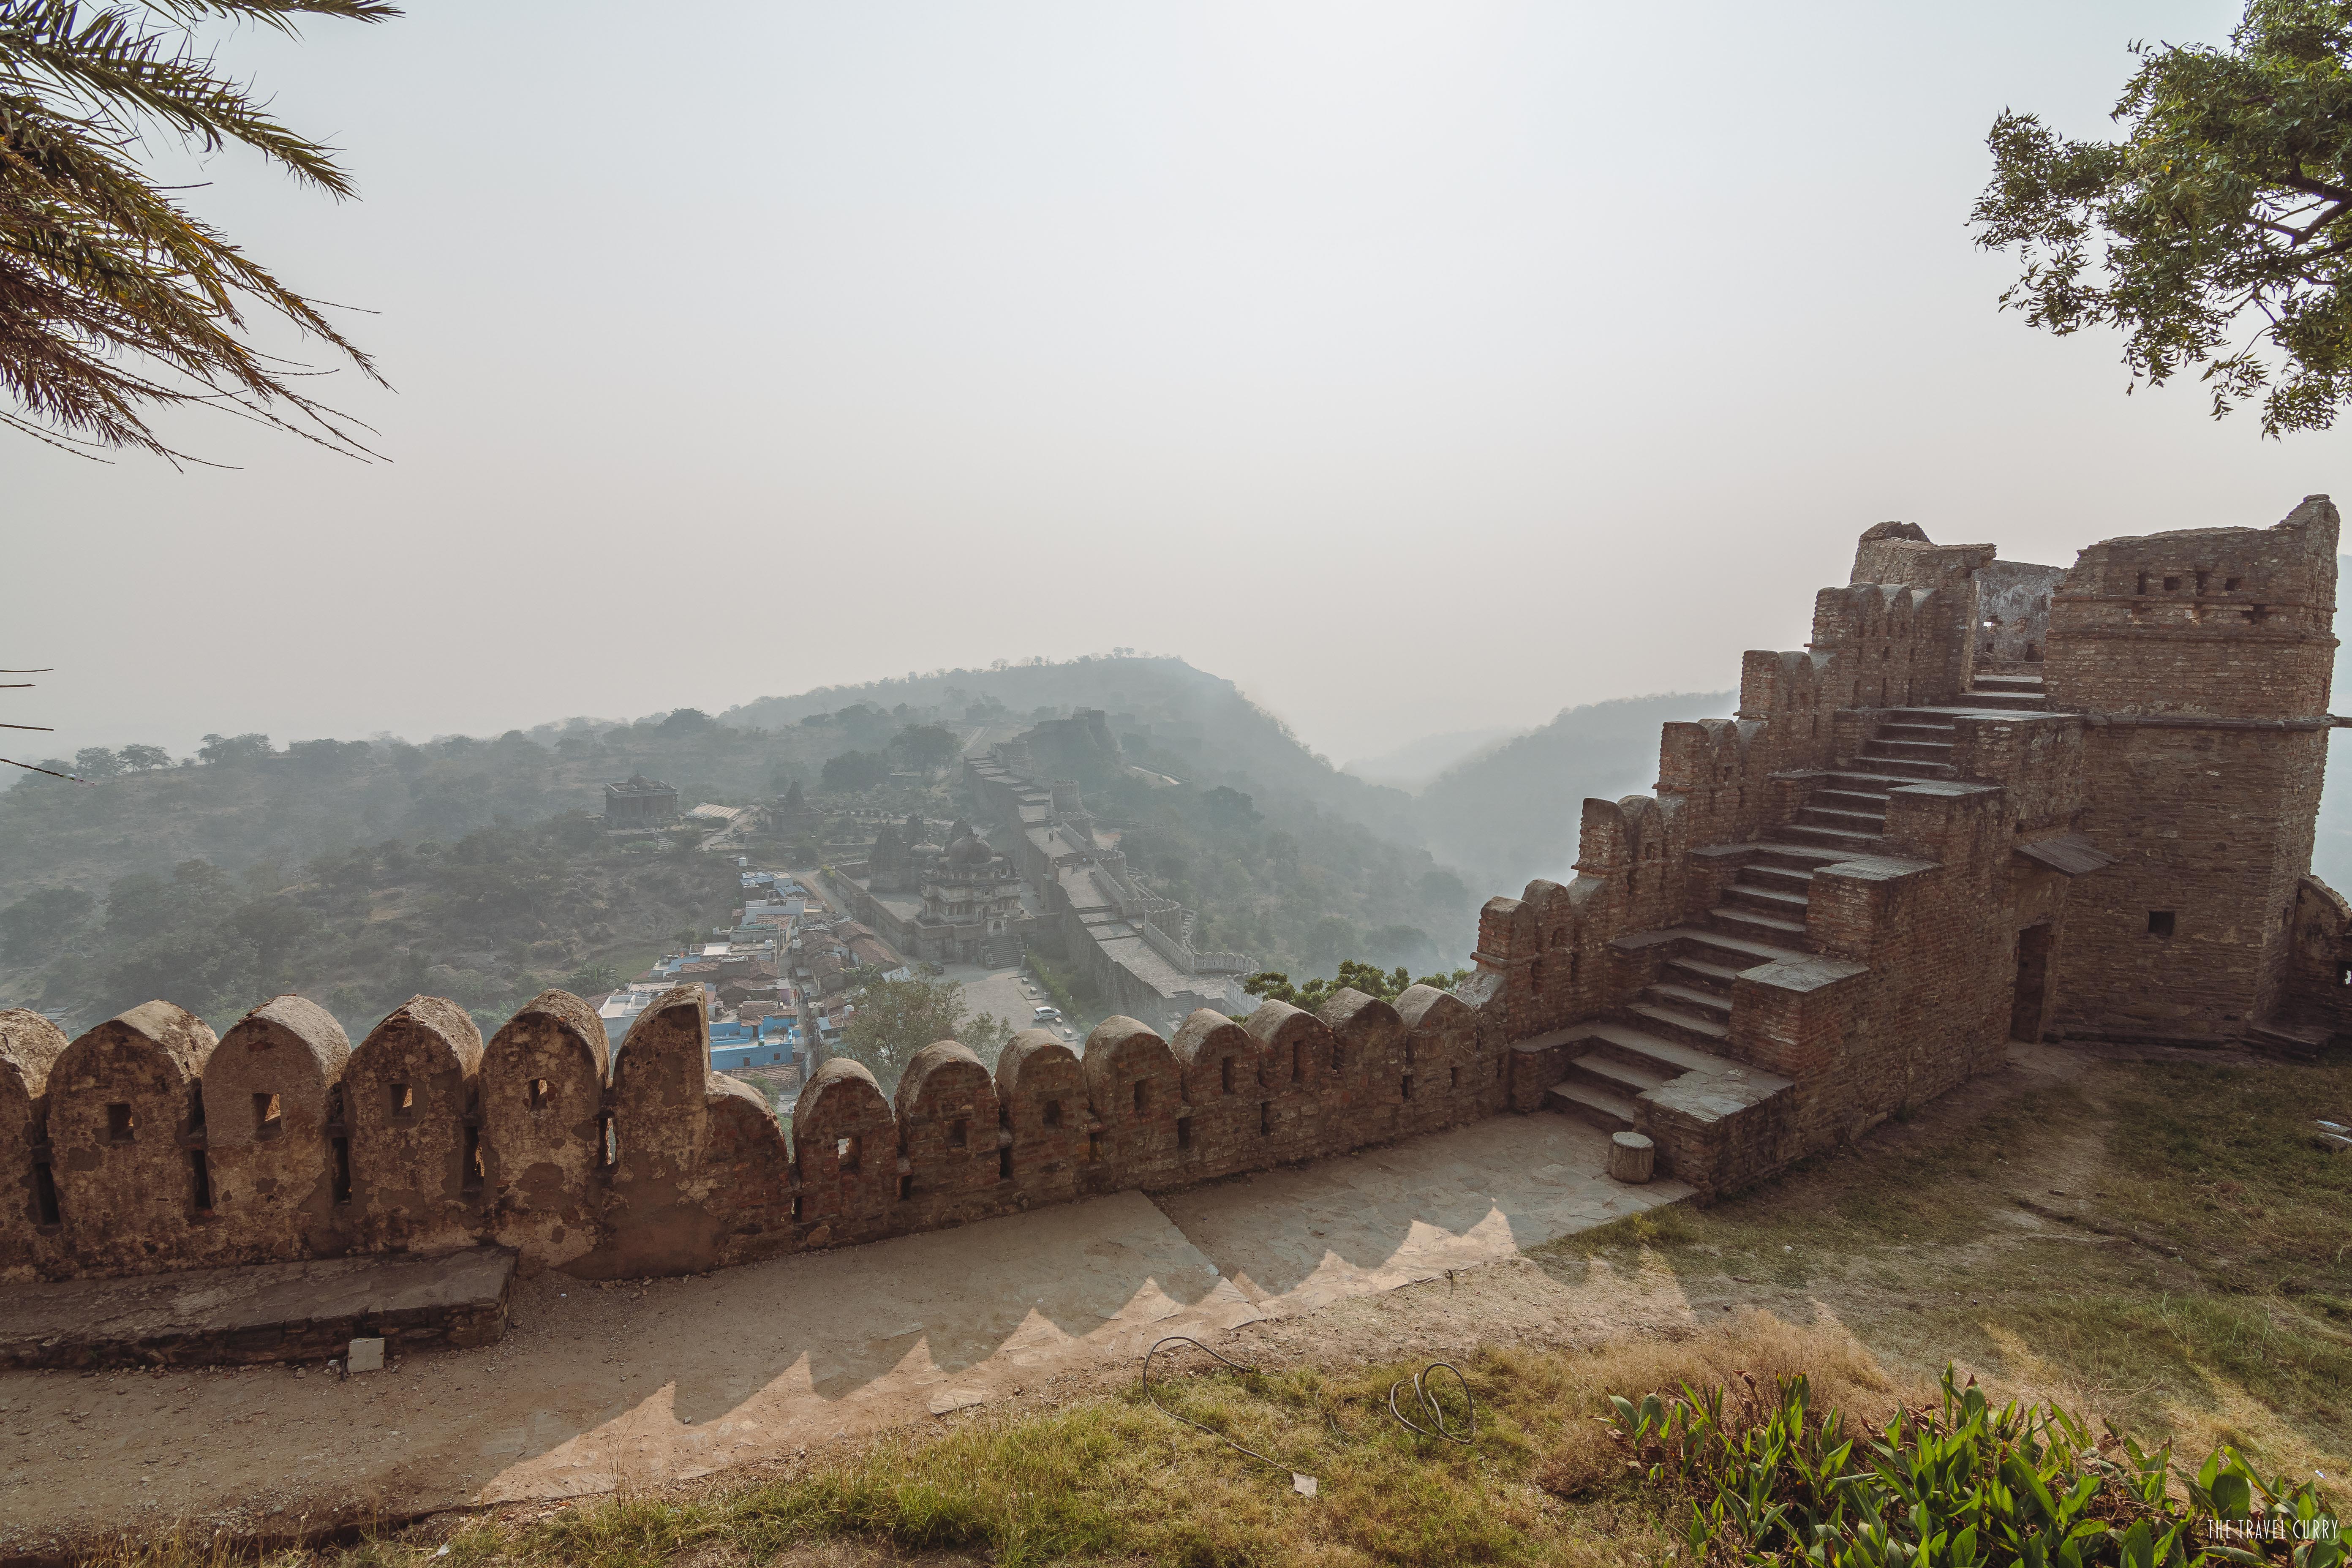 Bird's eye view of Kumbhalgarh Fort